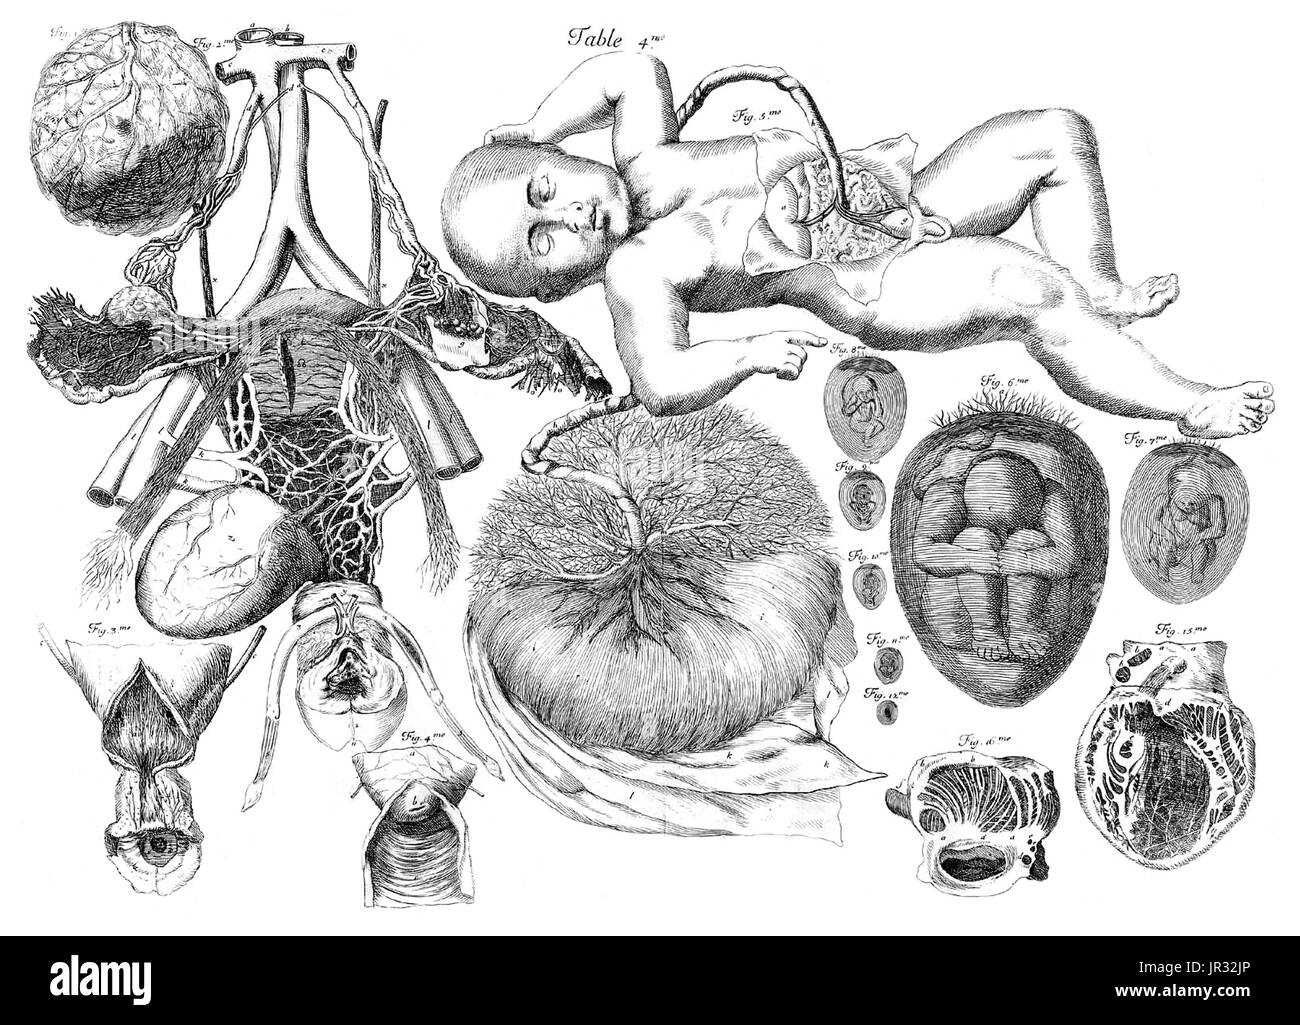 AmÃ© Bourdon,'Nouvelles tables anatomiques',1678 Stock Photo